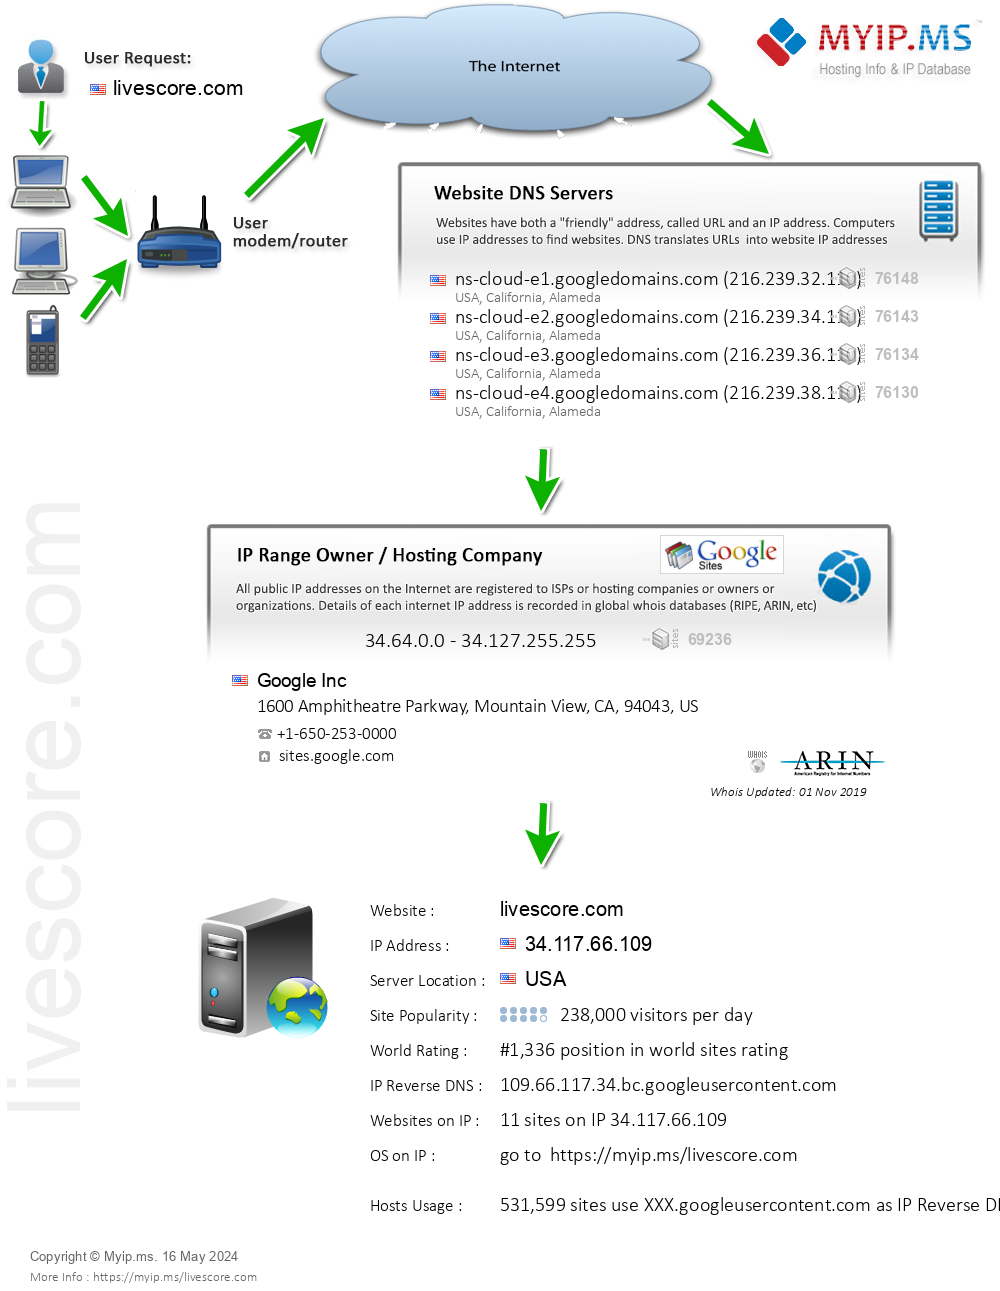 Livescore.com - Website Hosting Visual IP Diagram